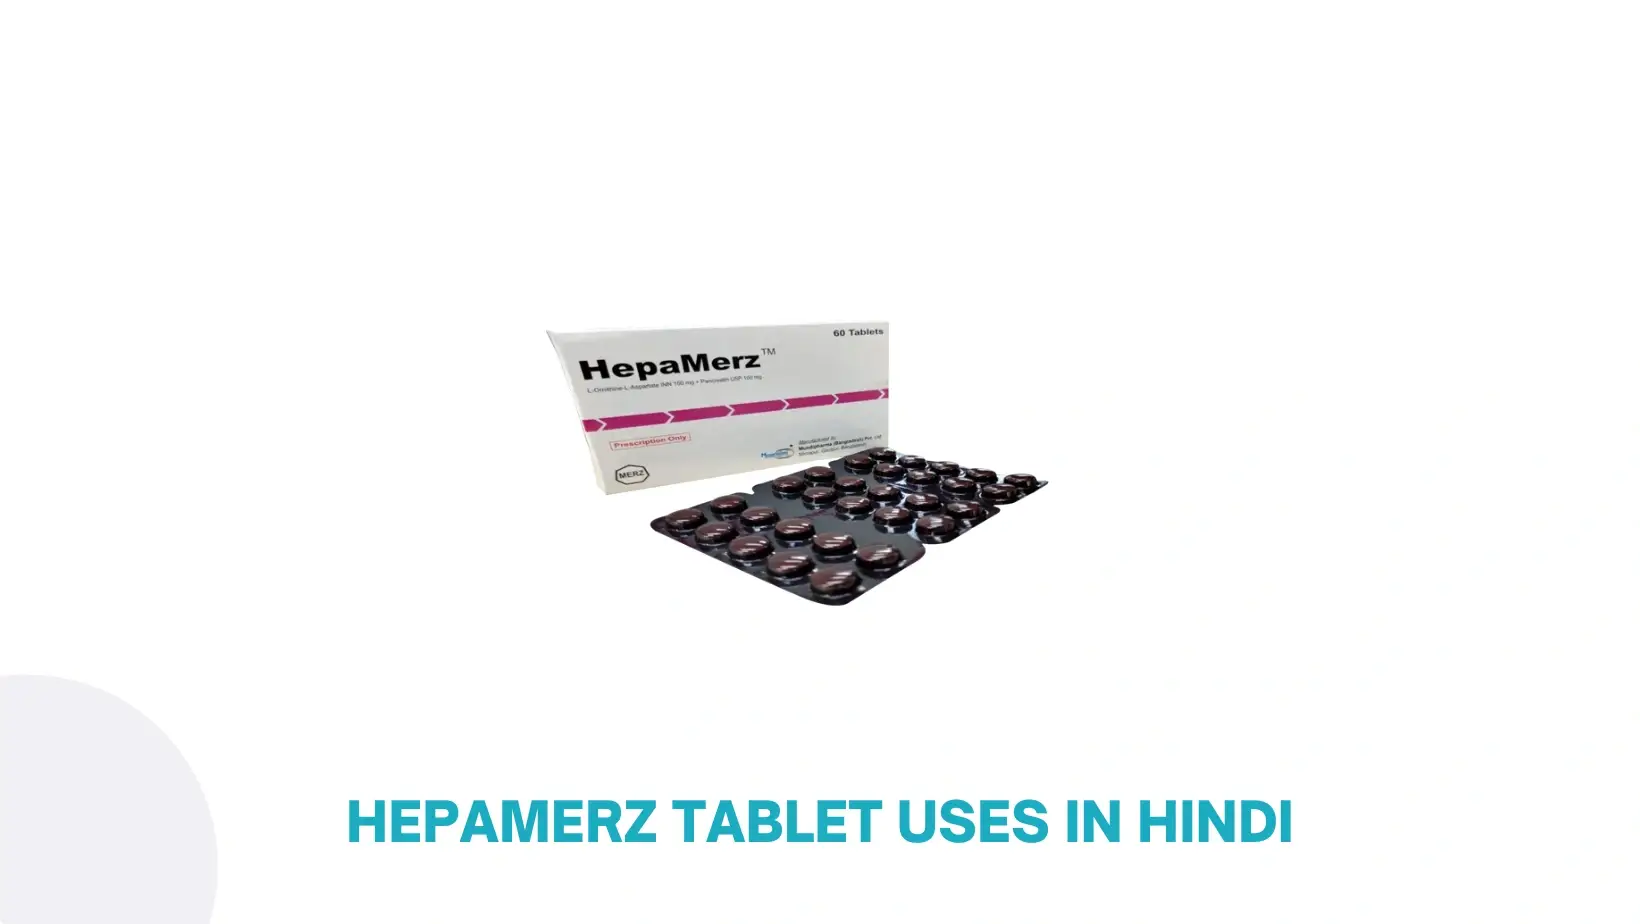 Hepamerz Tablet Uses In Hindi